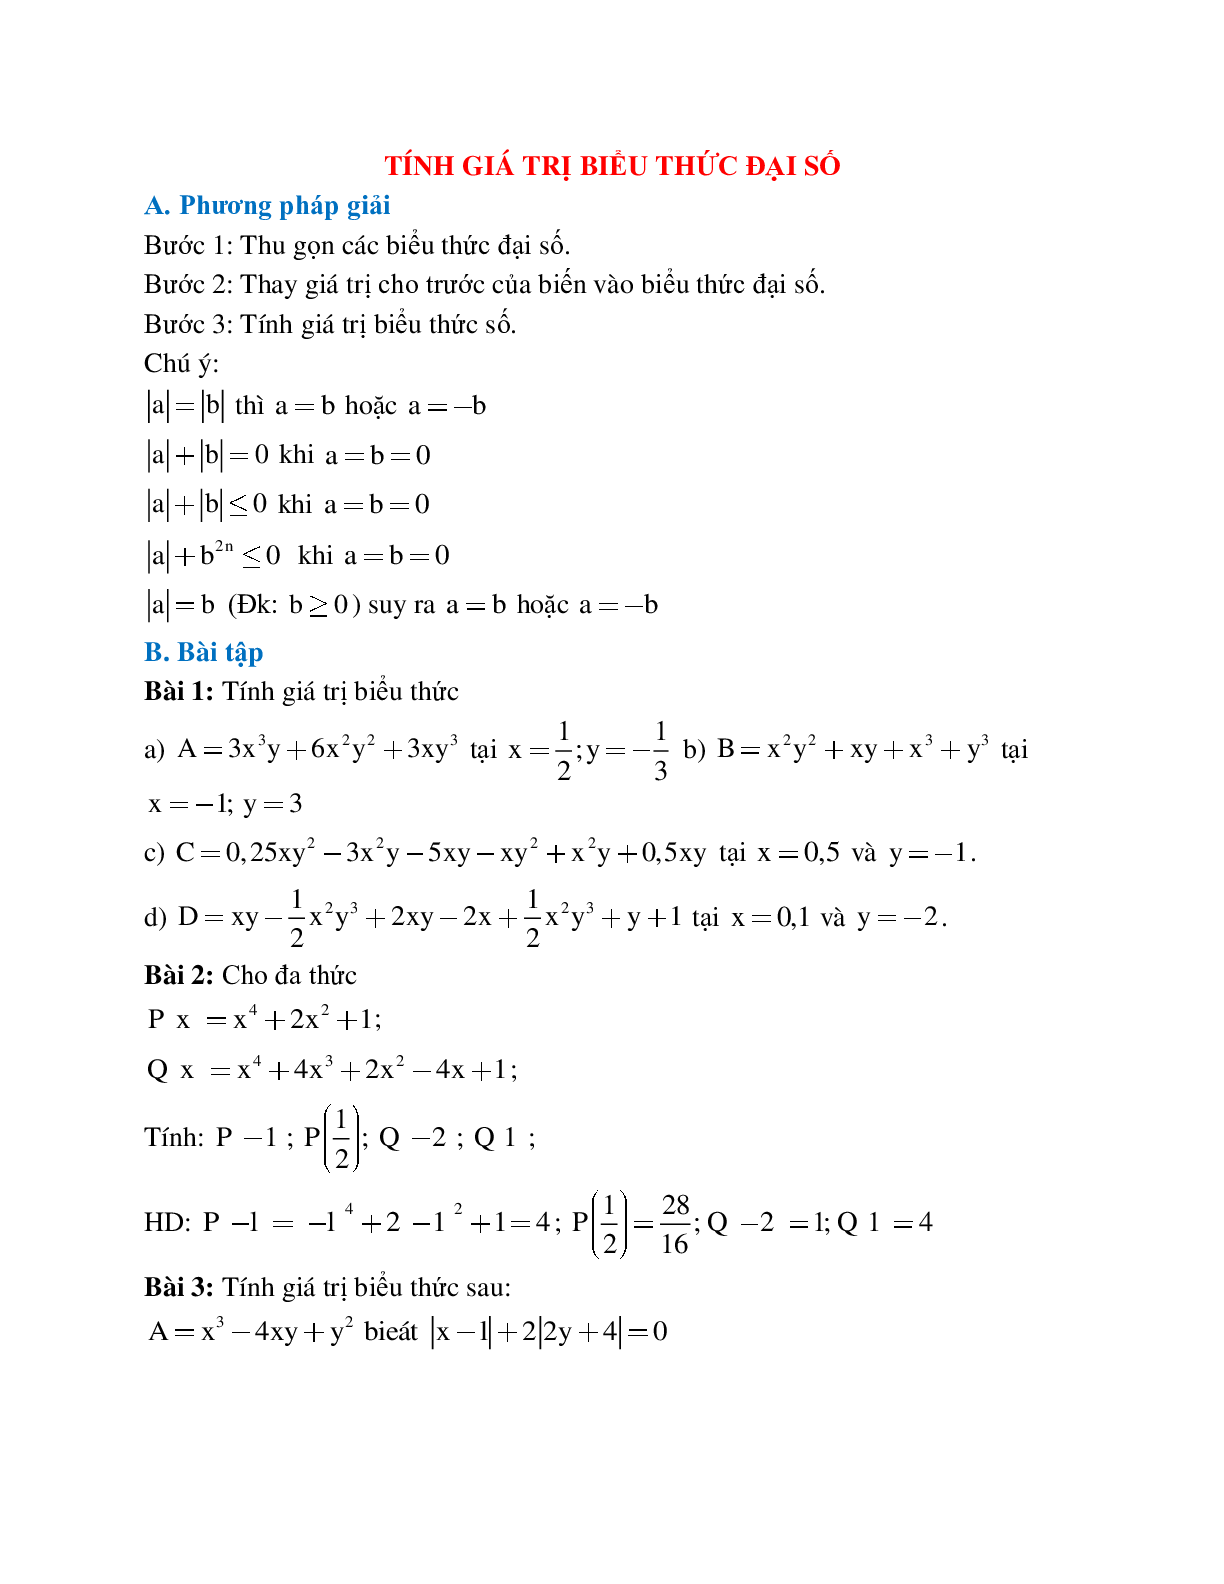 Cách giải Tính giá trị biểu thức đại số (trang 1)